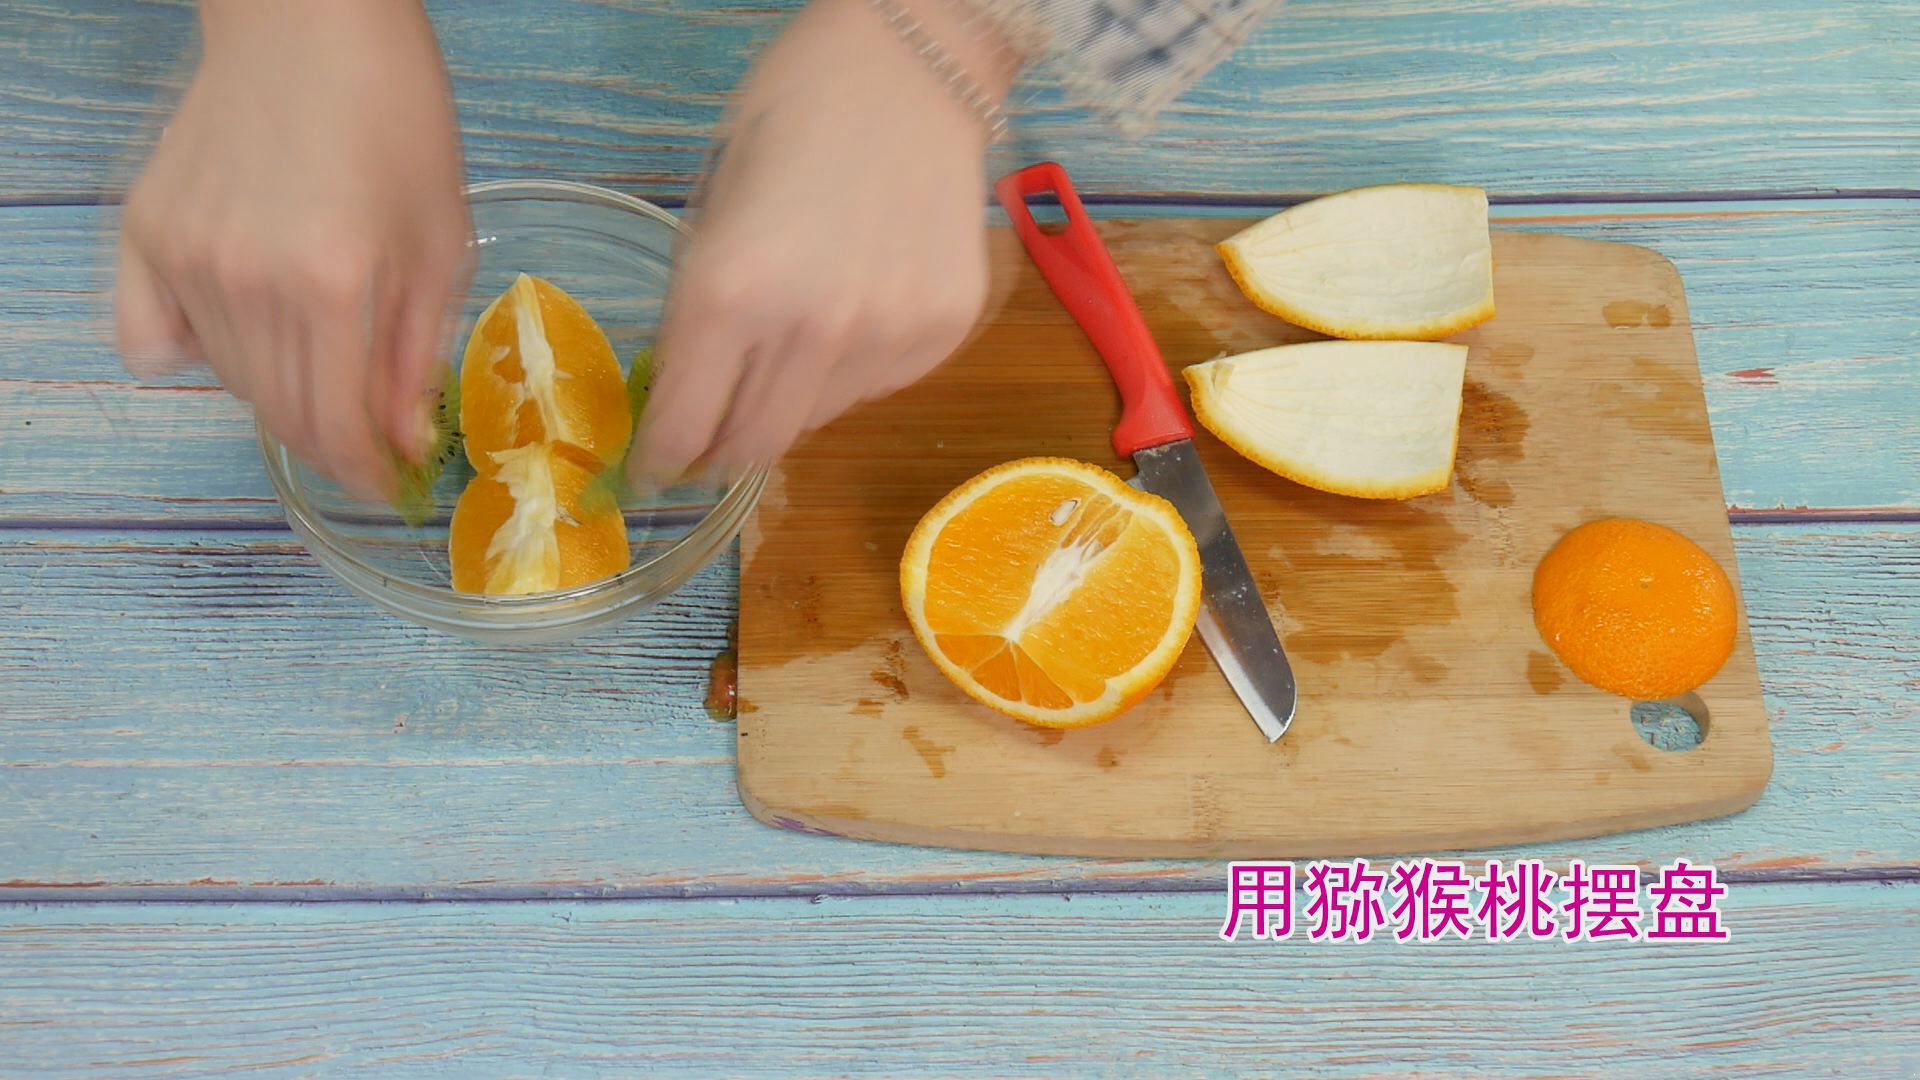 天然100%，橙子造型的Zumox橙汁包装设计案例欣赏 - 郑州勤略品牌设计有限公司